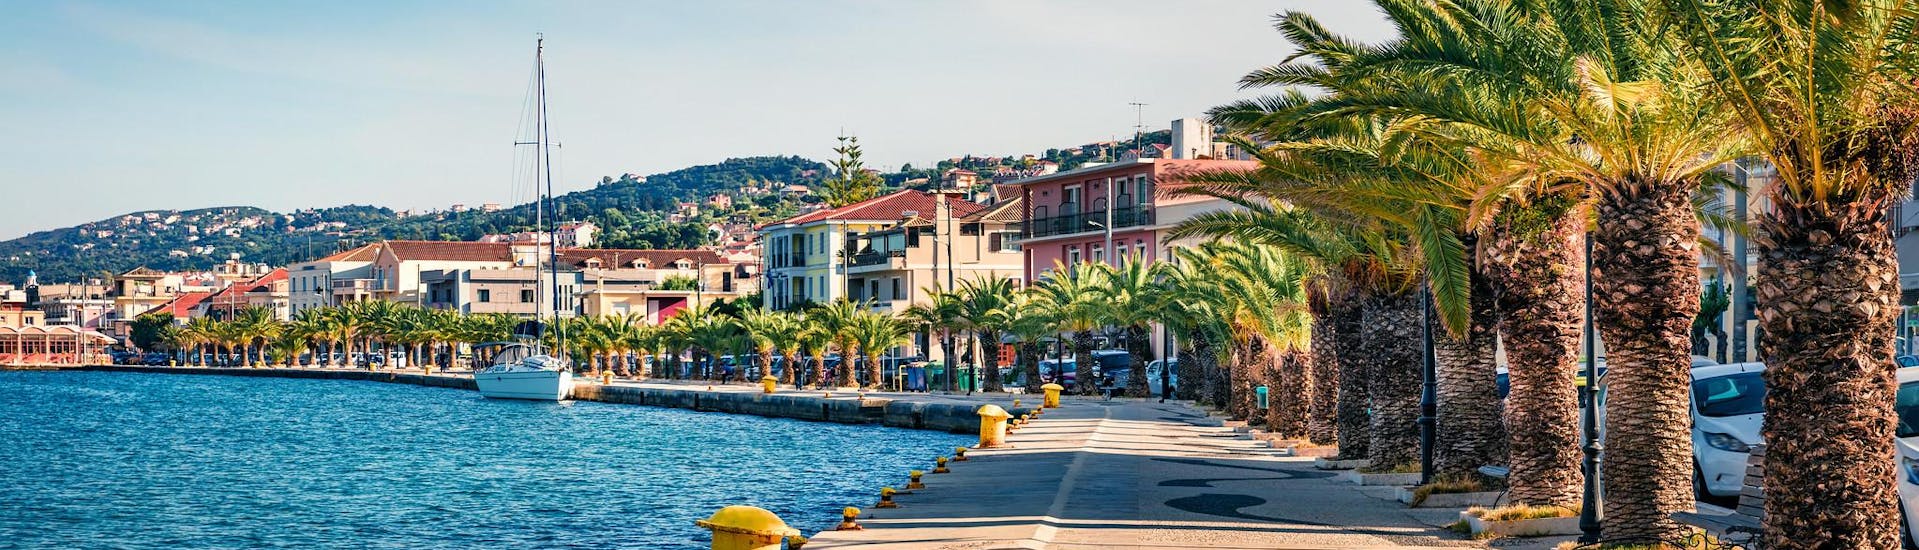 Vista del porto di Argostoli, splendido punto di partenza per gite in barca nell'isola di Cefalonia, in Grecia.